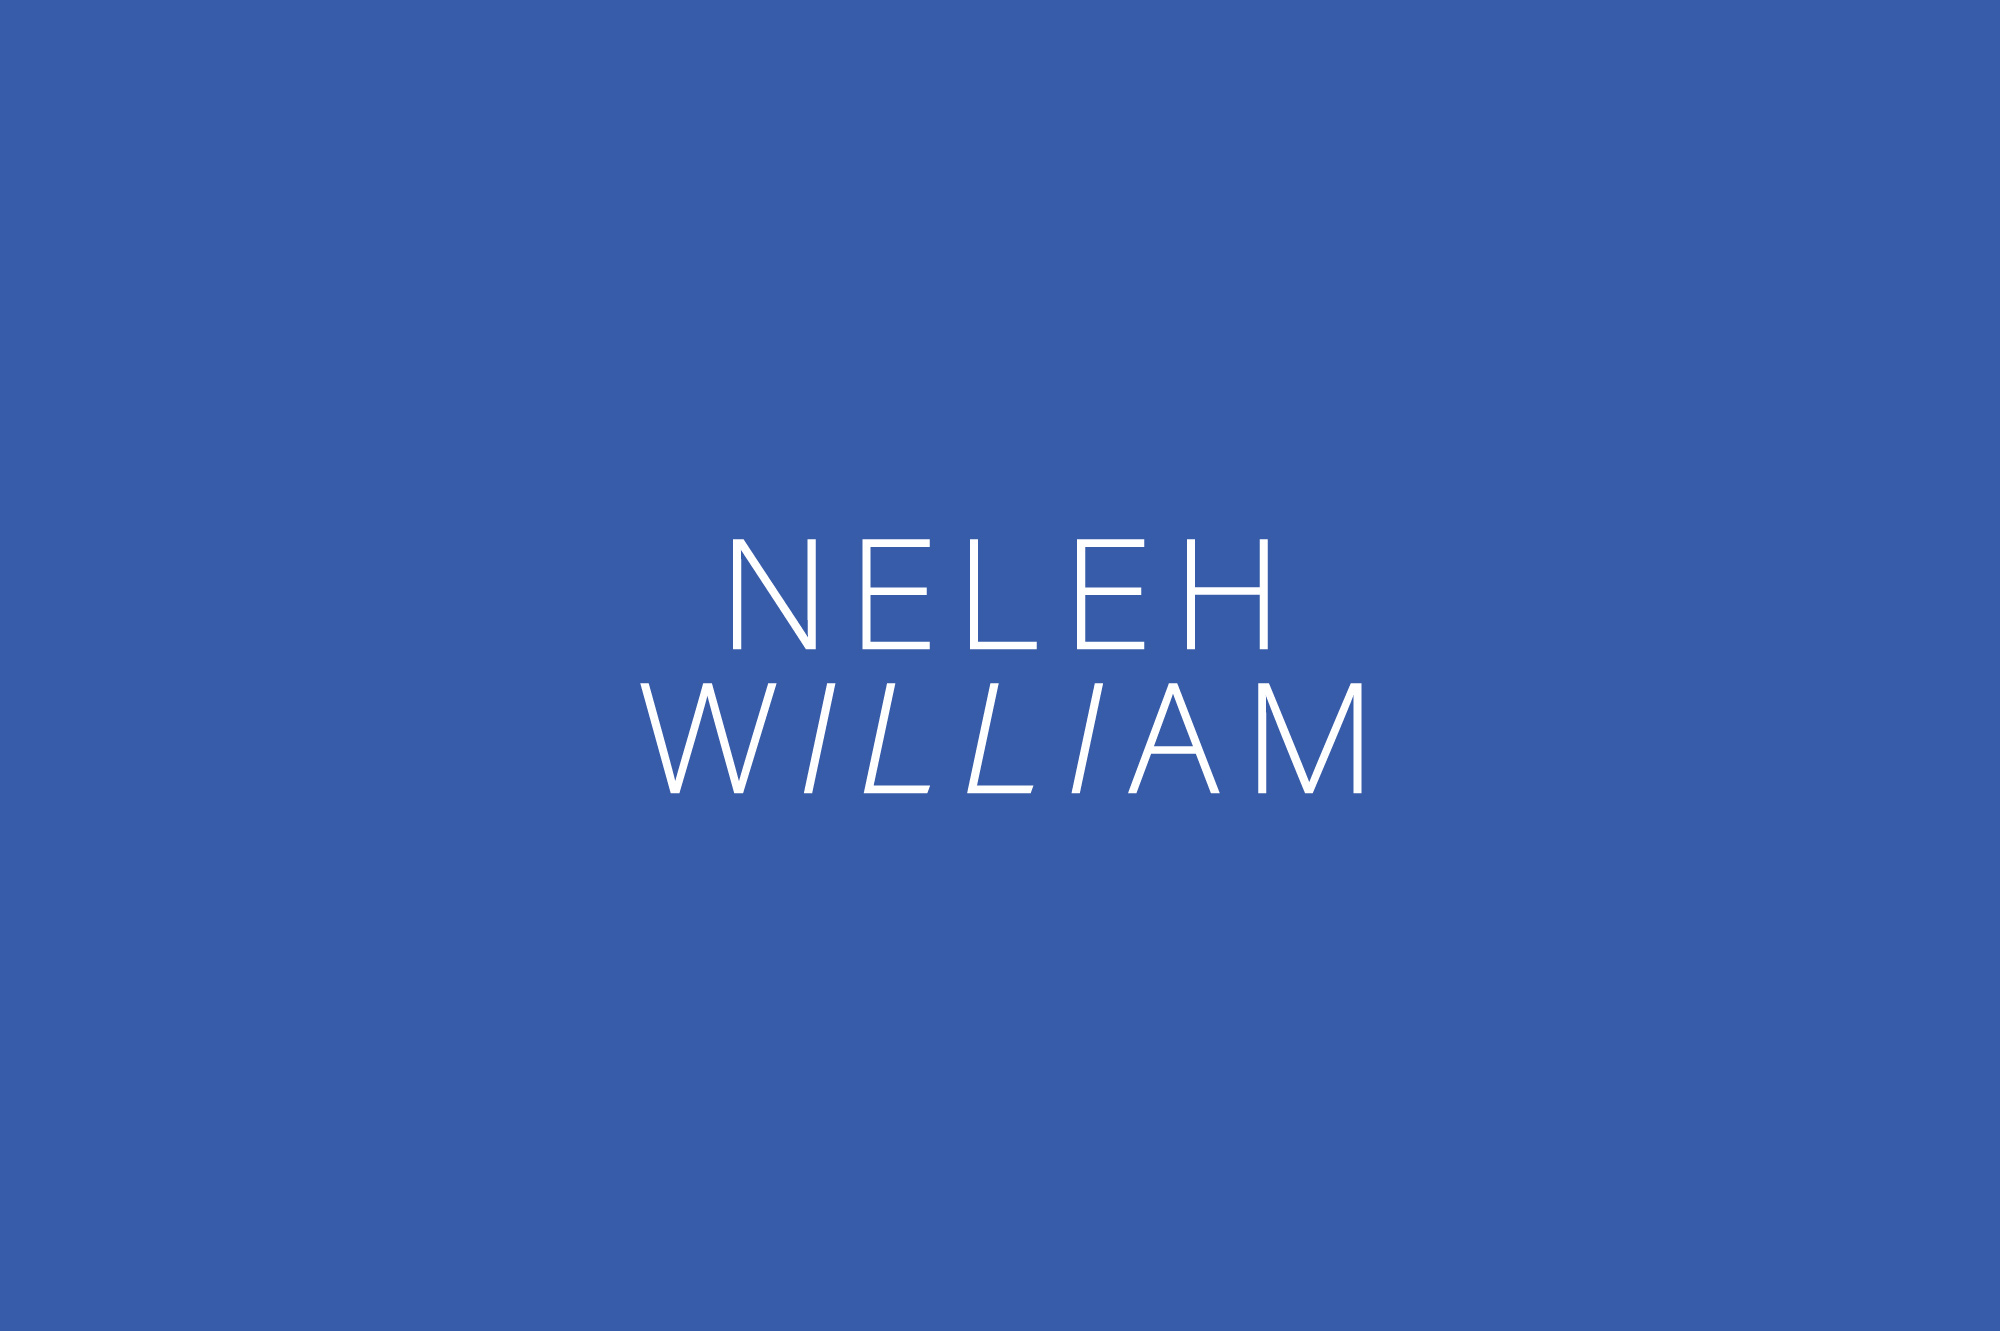 White Neleh William logo on electric blue background